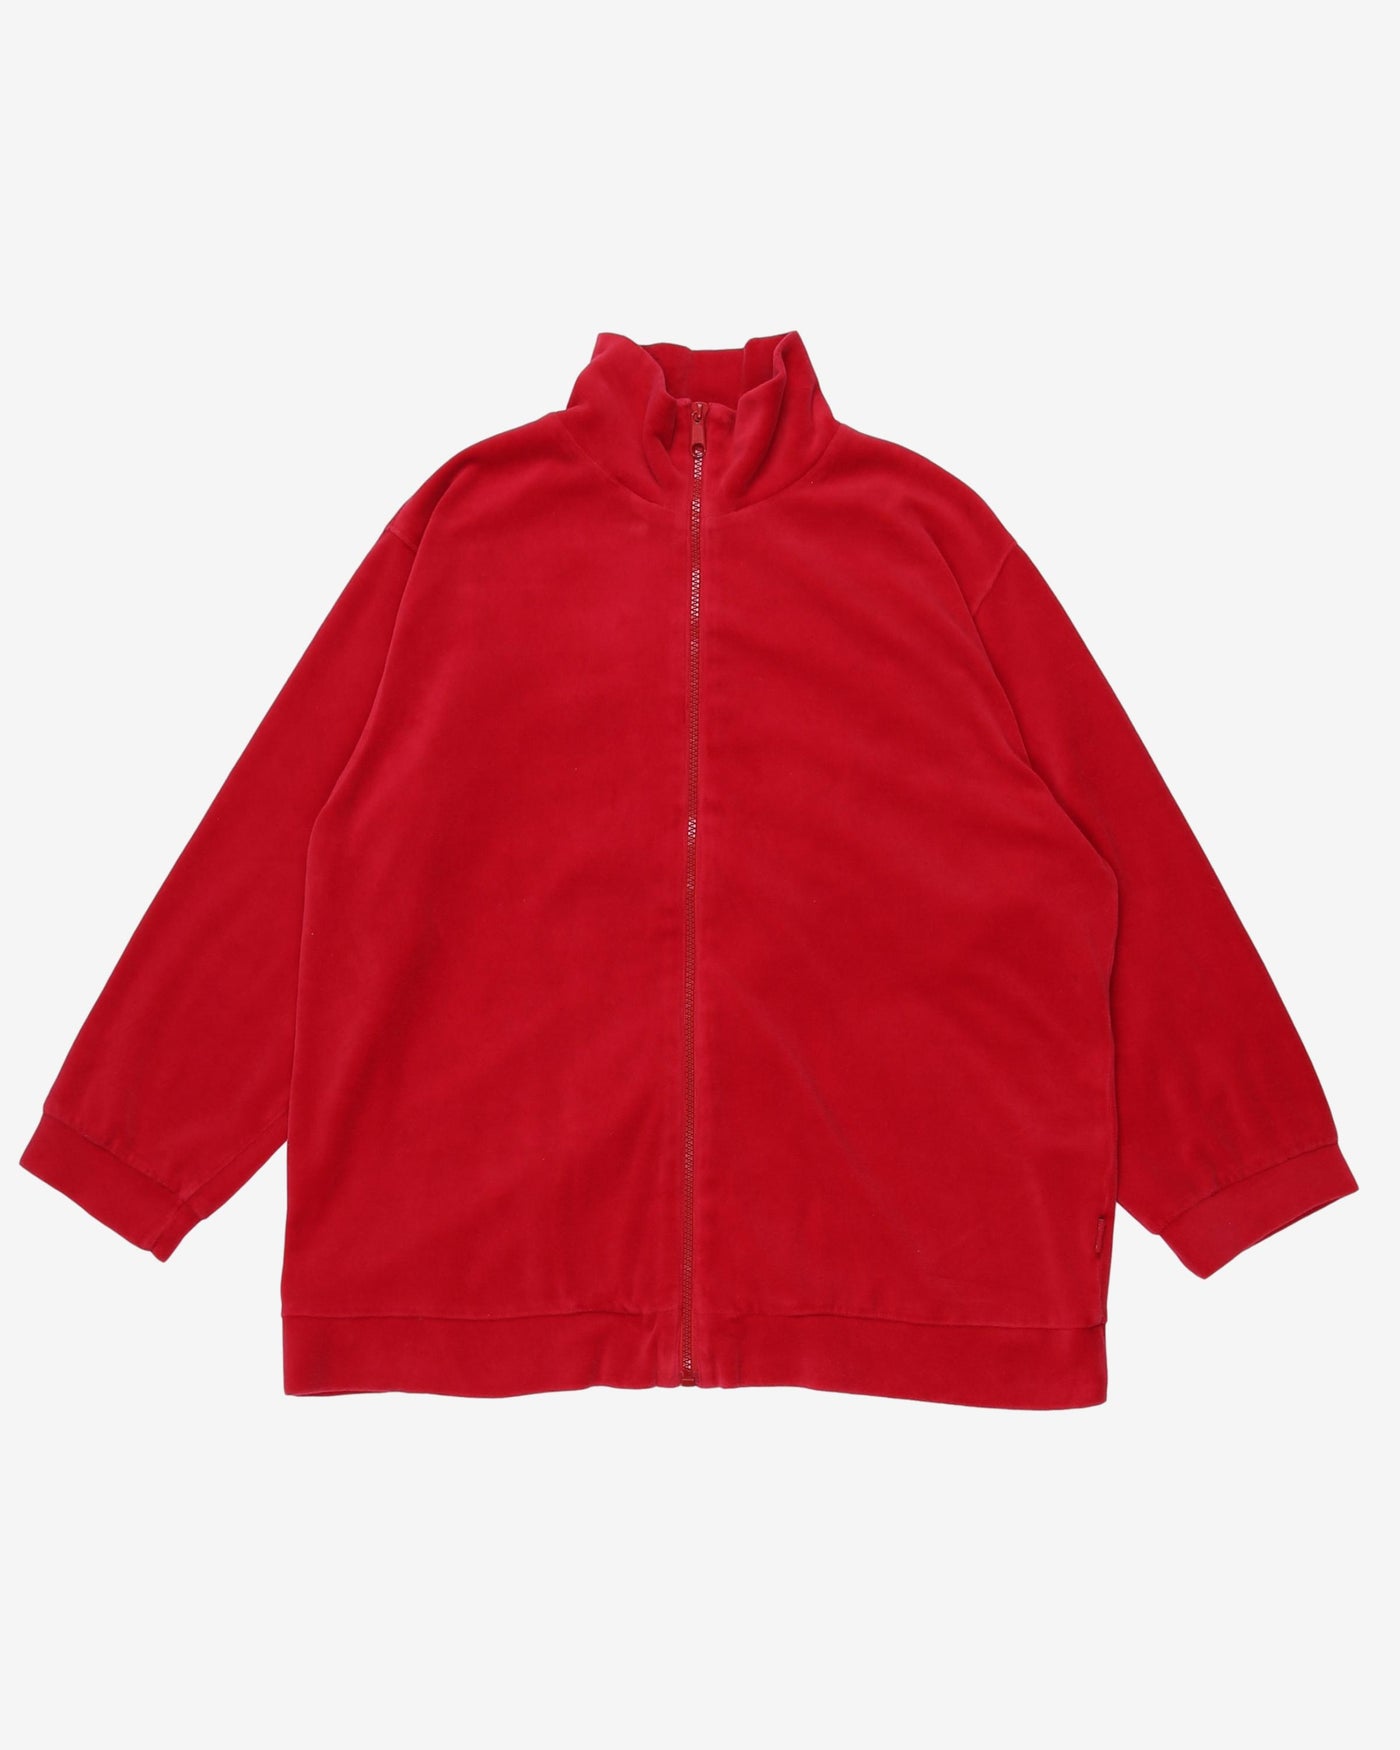 Esprit Pink / Red Velour Jacket - XL